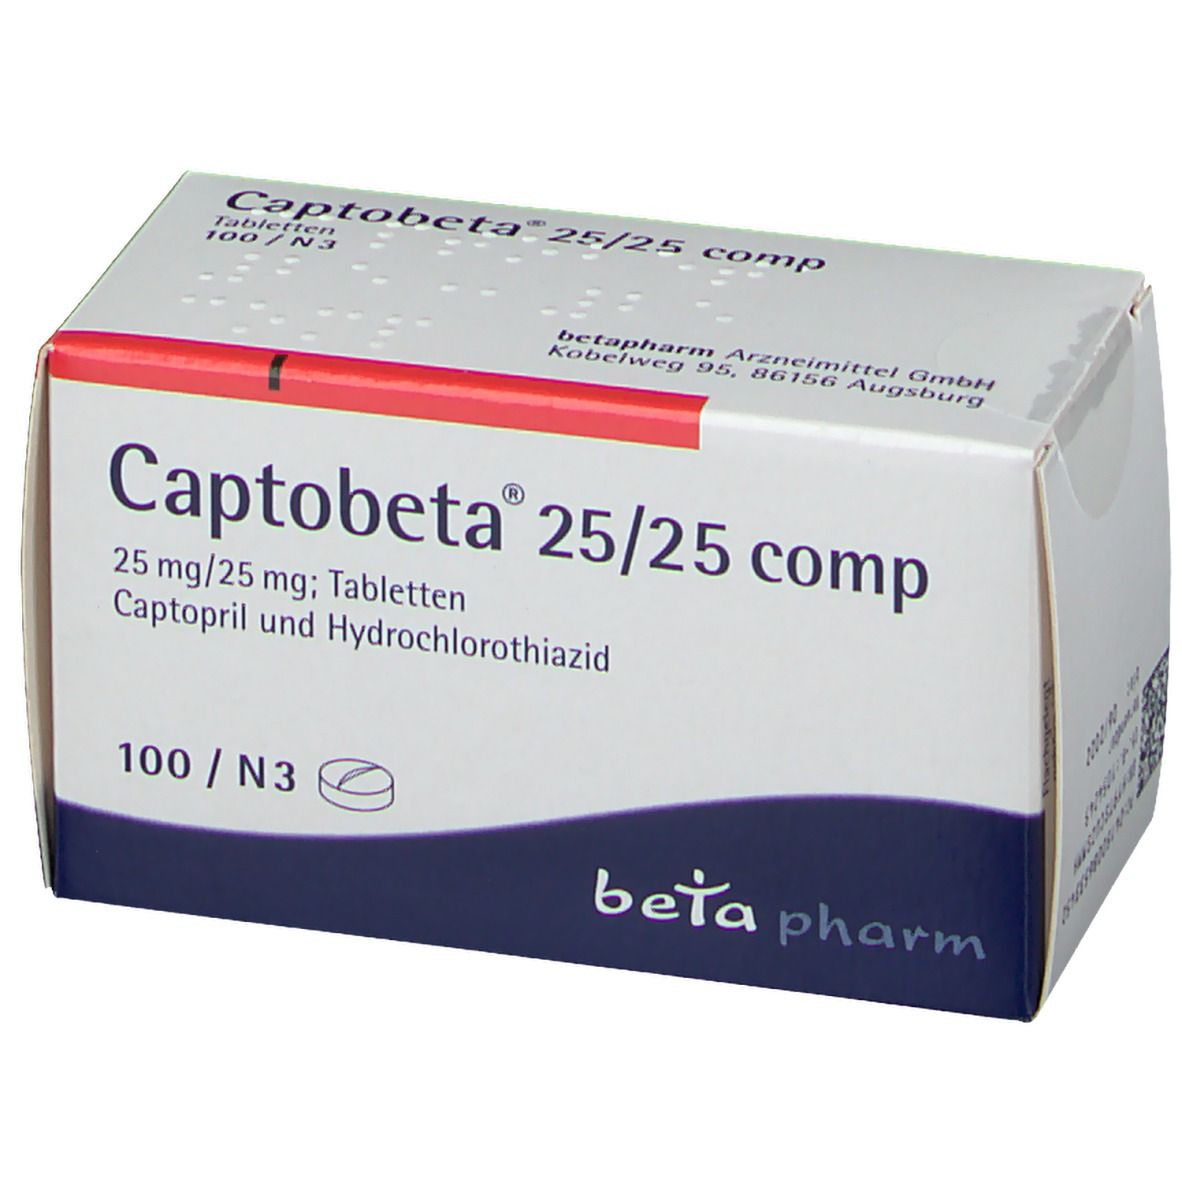 Captobeta® 25/25 comp